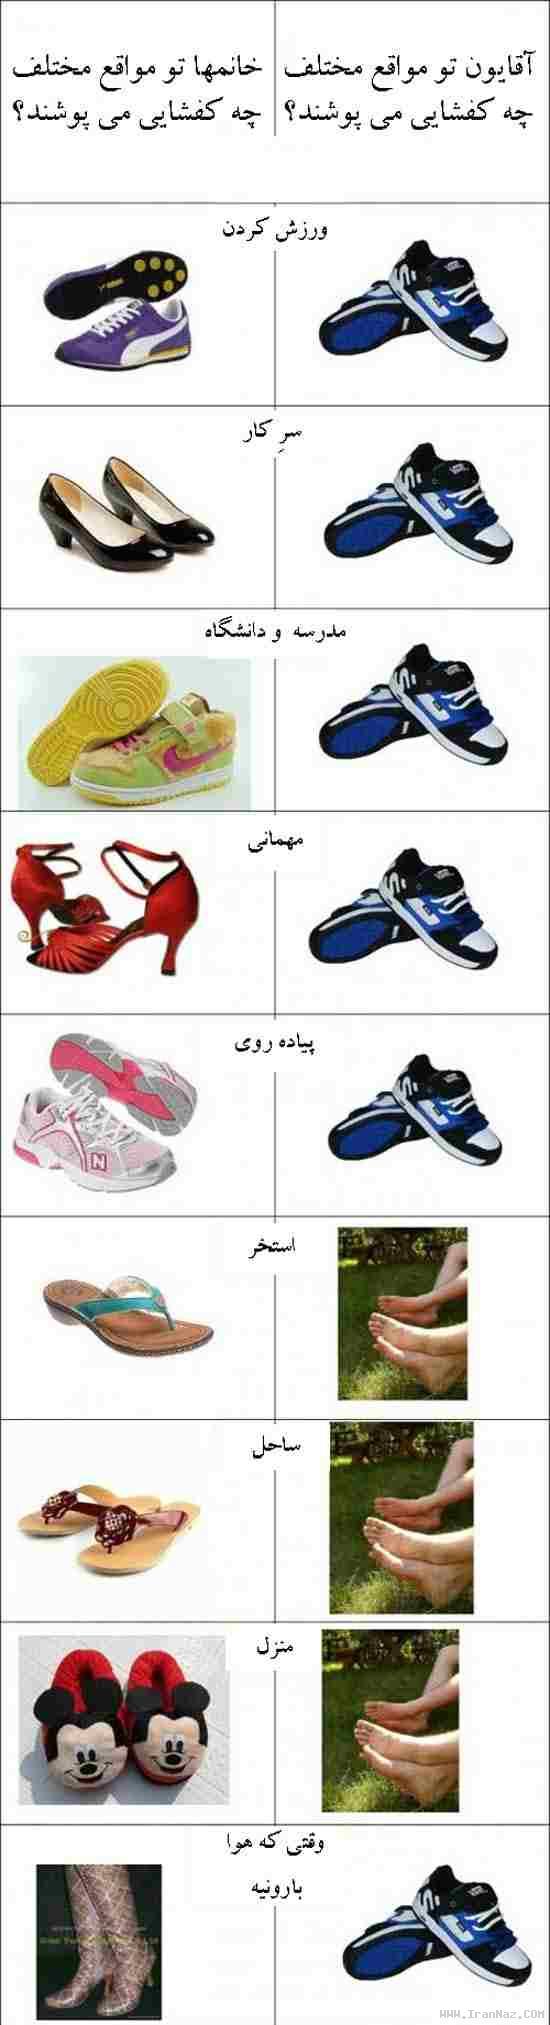 تفاوت جالب کفش پوشیدن دخترها و پسرها (تصویری)